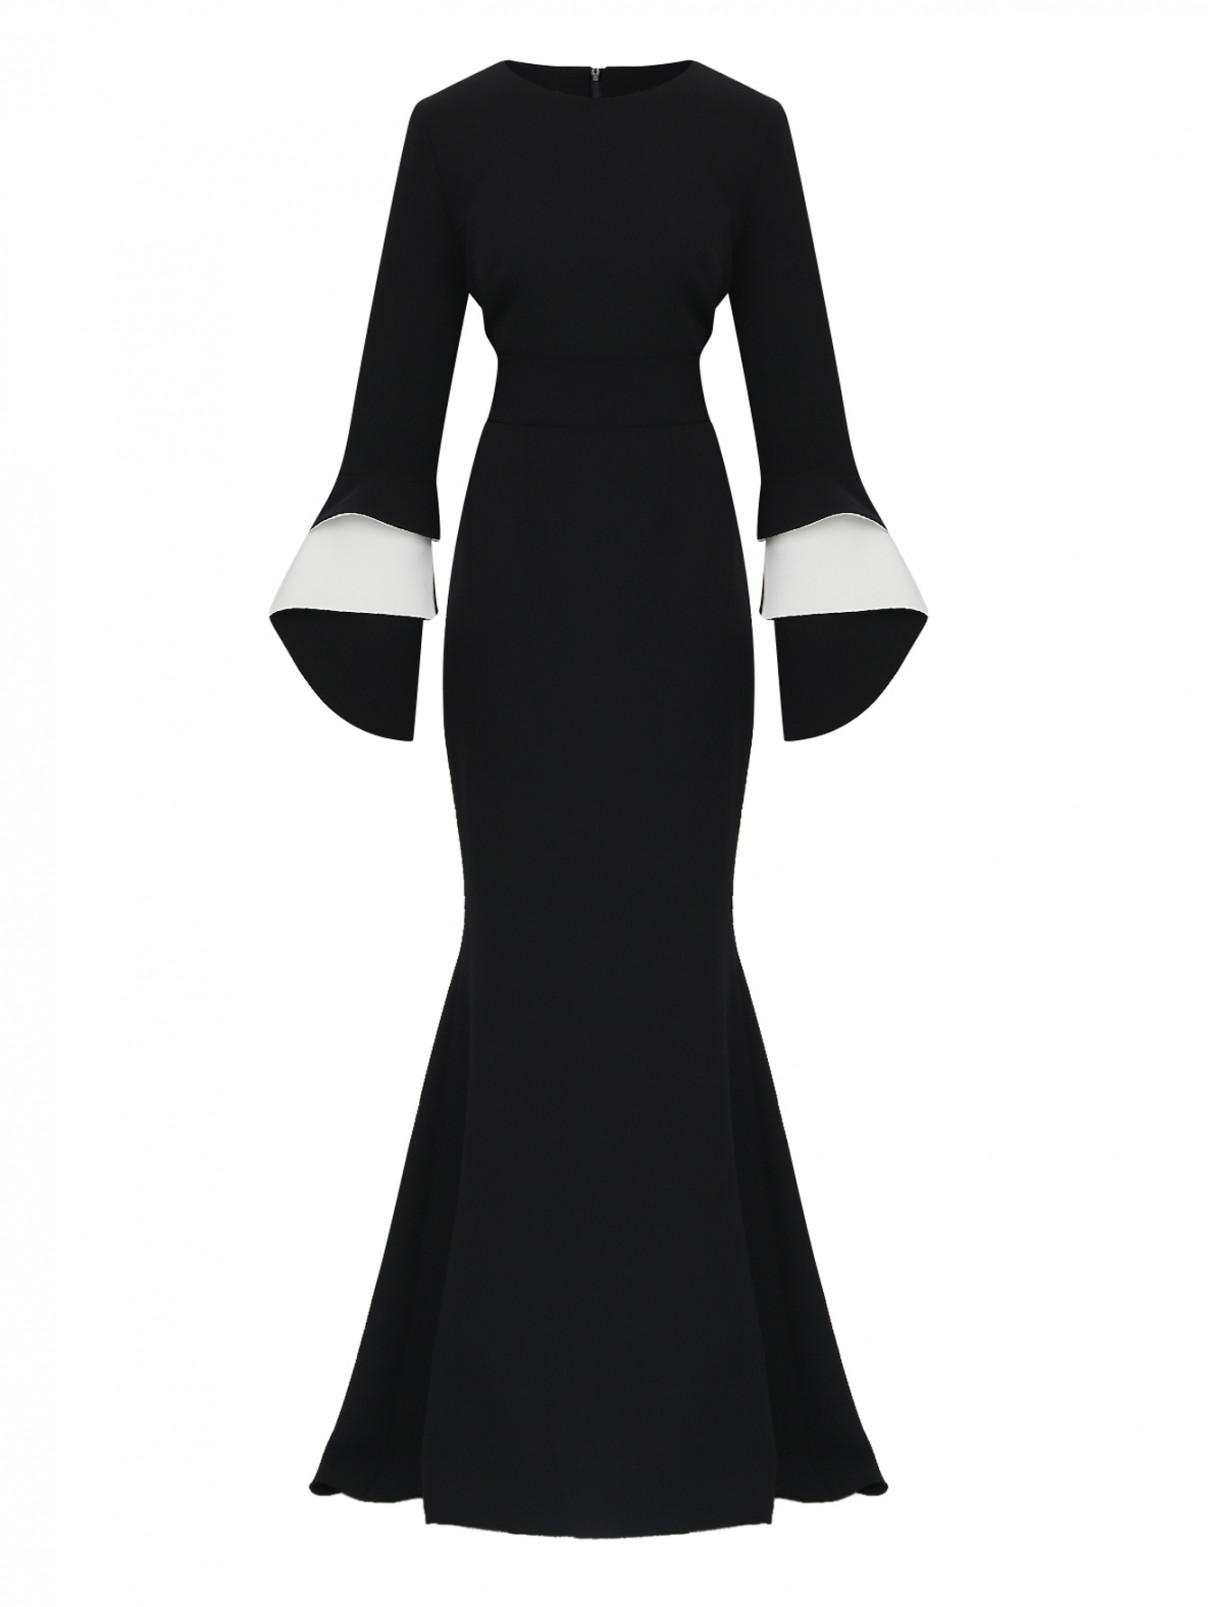 платье-макси приталенное с контрастными вставками на рукавах Safiyaa  –  Общий вид  – Цвет:  Черный